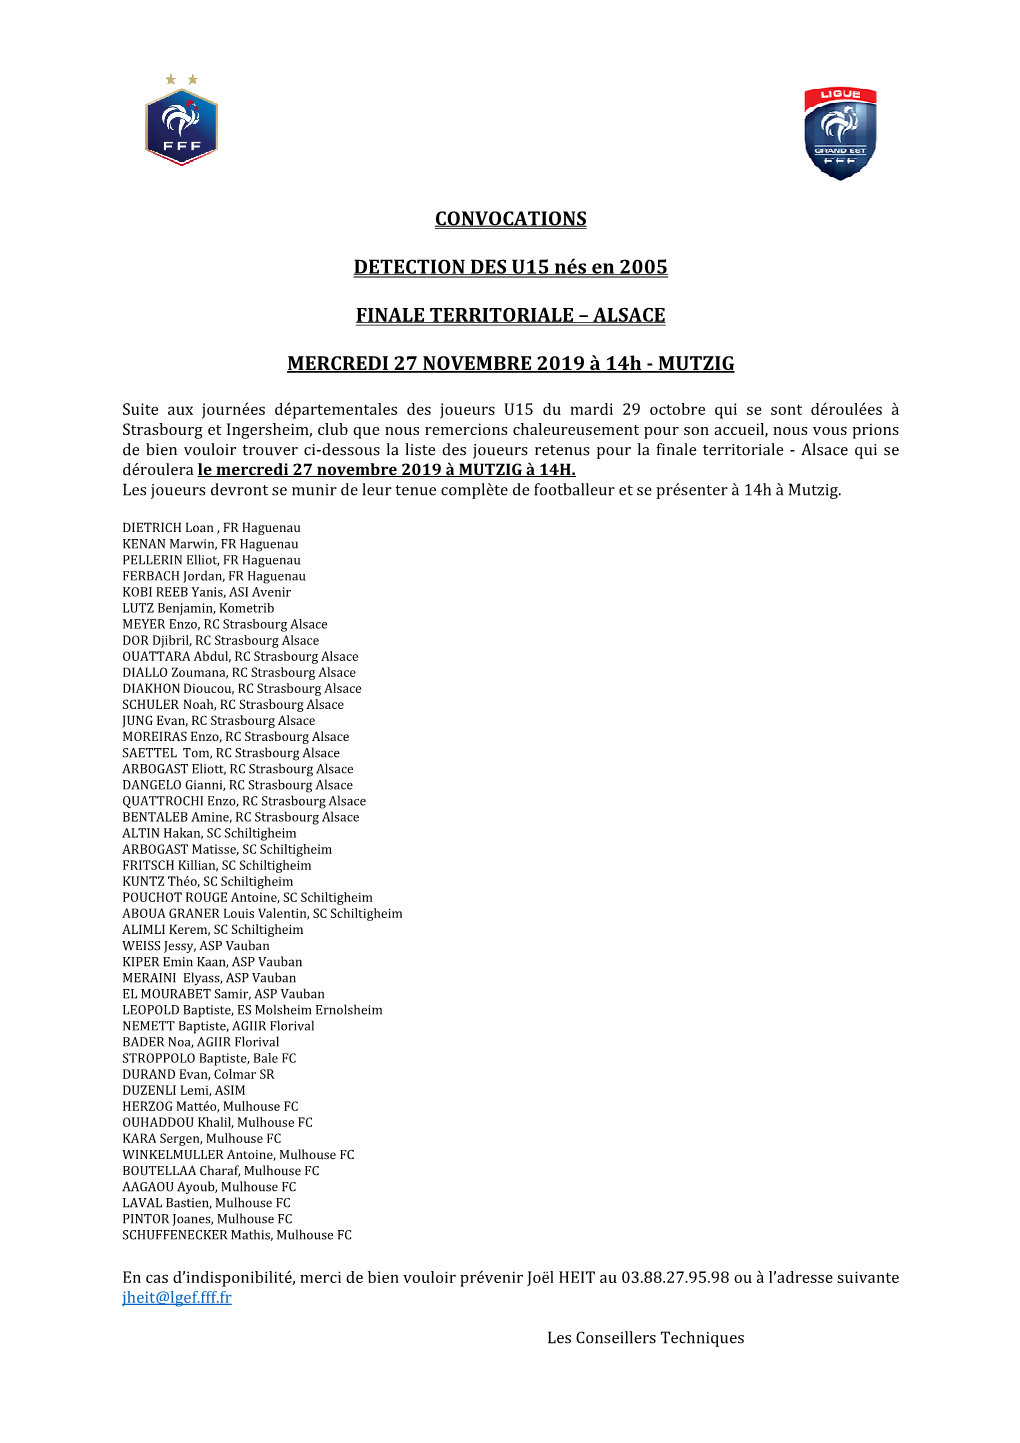 CONVOCATIONS DETECTION DES U15 Nés En 2005 FINALE